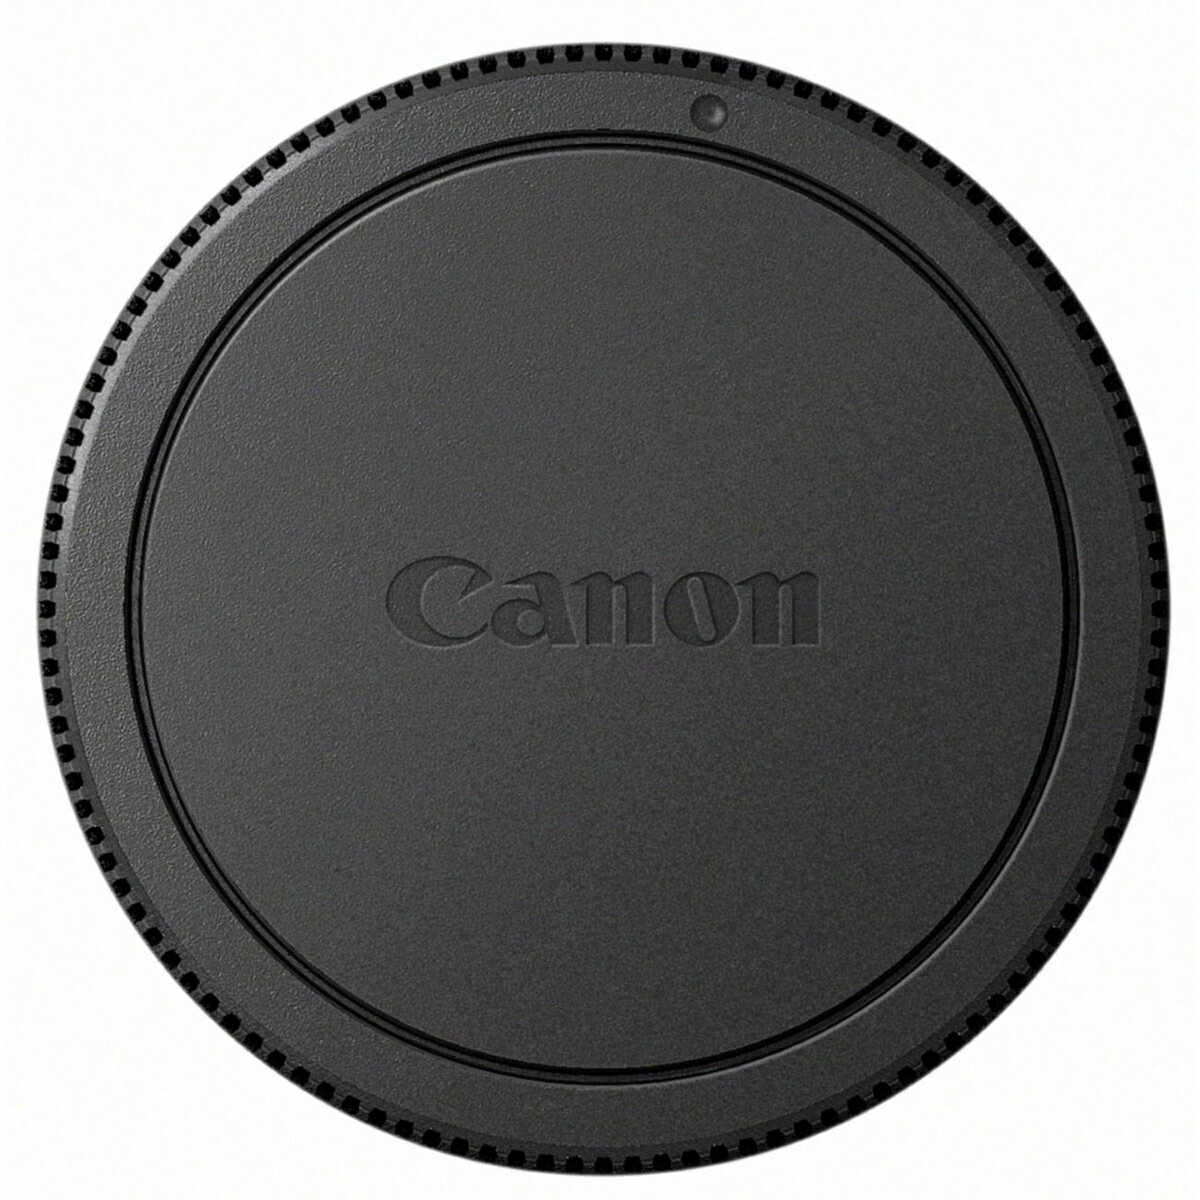 キヤノン EF-Mレンズマウントキャップ(レンズリアキャップ)Lens Dust Cap EB 4960999845890 02P05Nov16